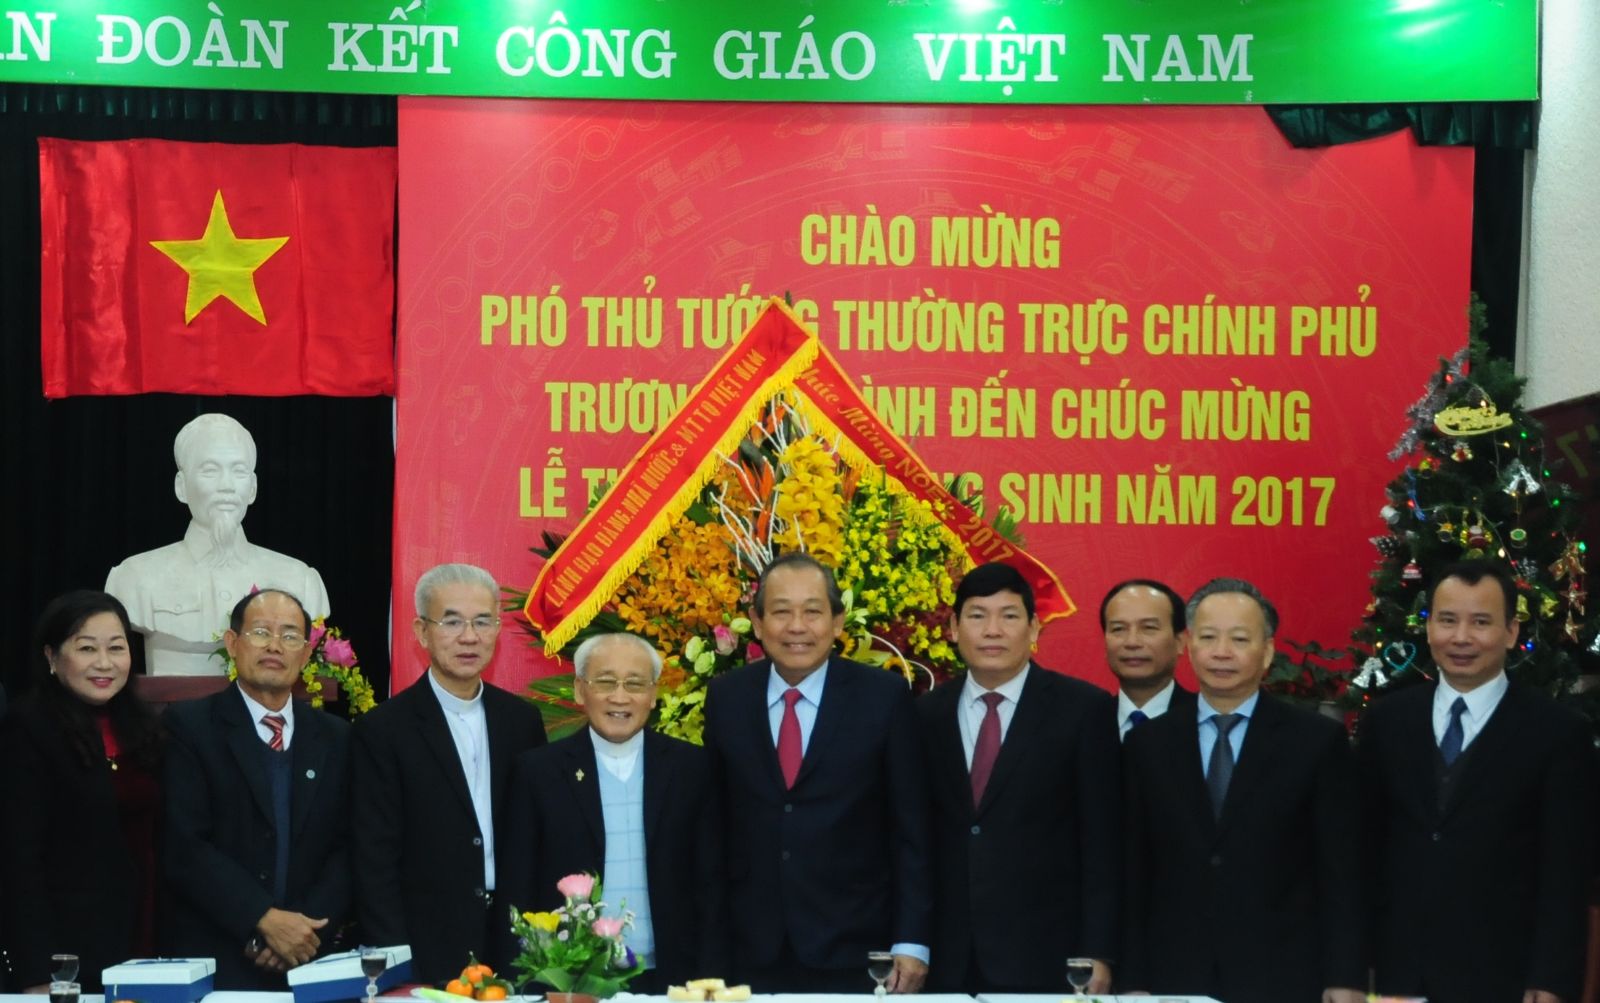 Ông Trương Hòa Bình, Ủy viên Bộ Chính trị, Phó Thủ tướng Thường trực Chính phủ đến thăm, chúc mừng Giáng sinh 2017 Ủy ban Đoàn kết Công giáo Việt Nam. Ảnh: MC